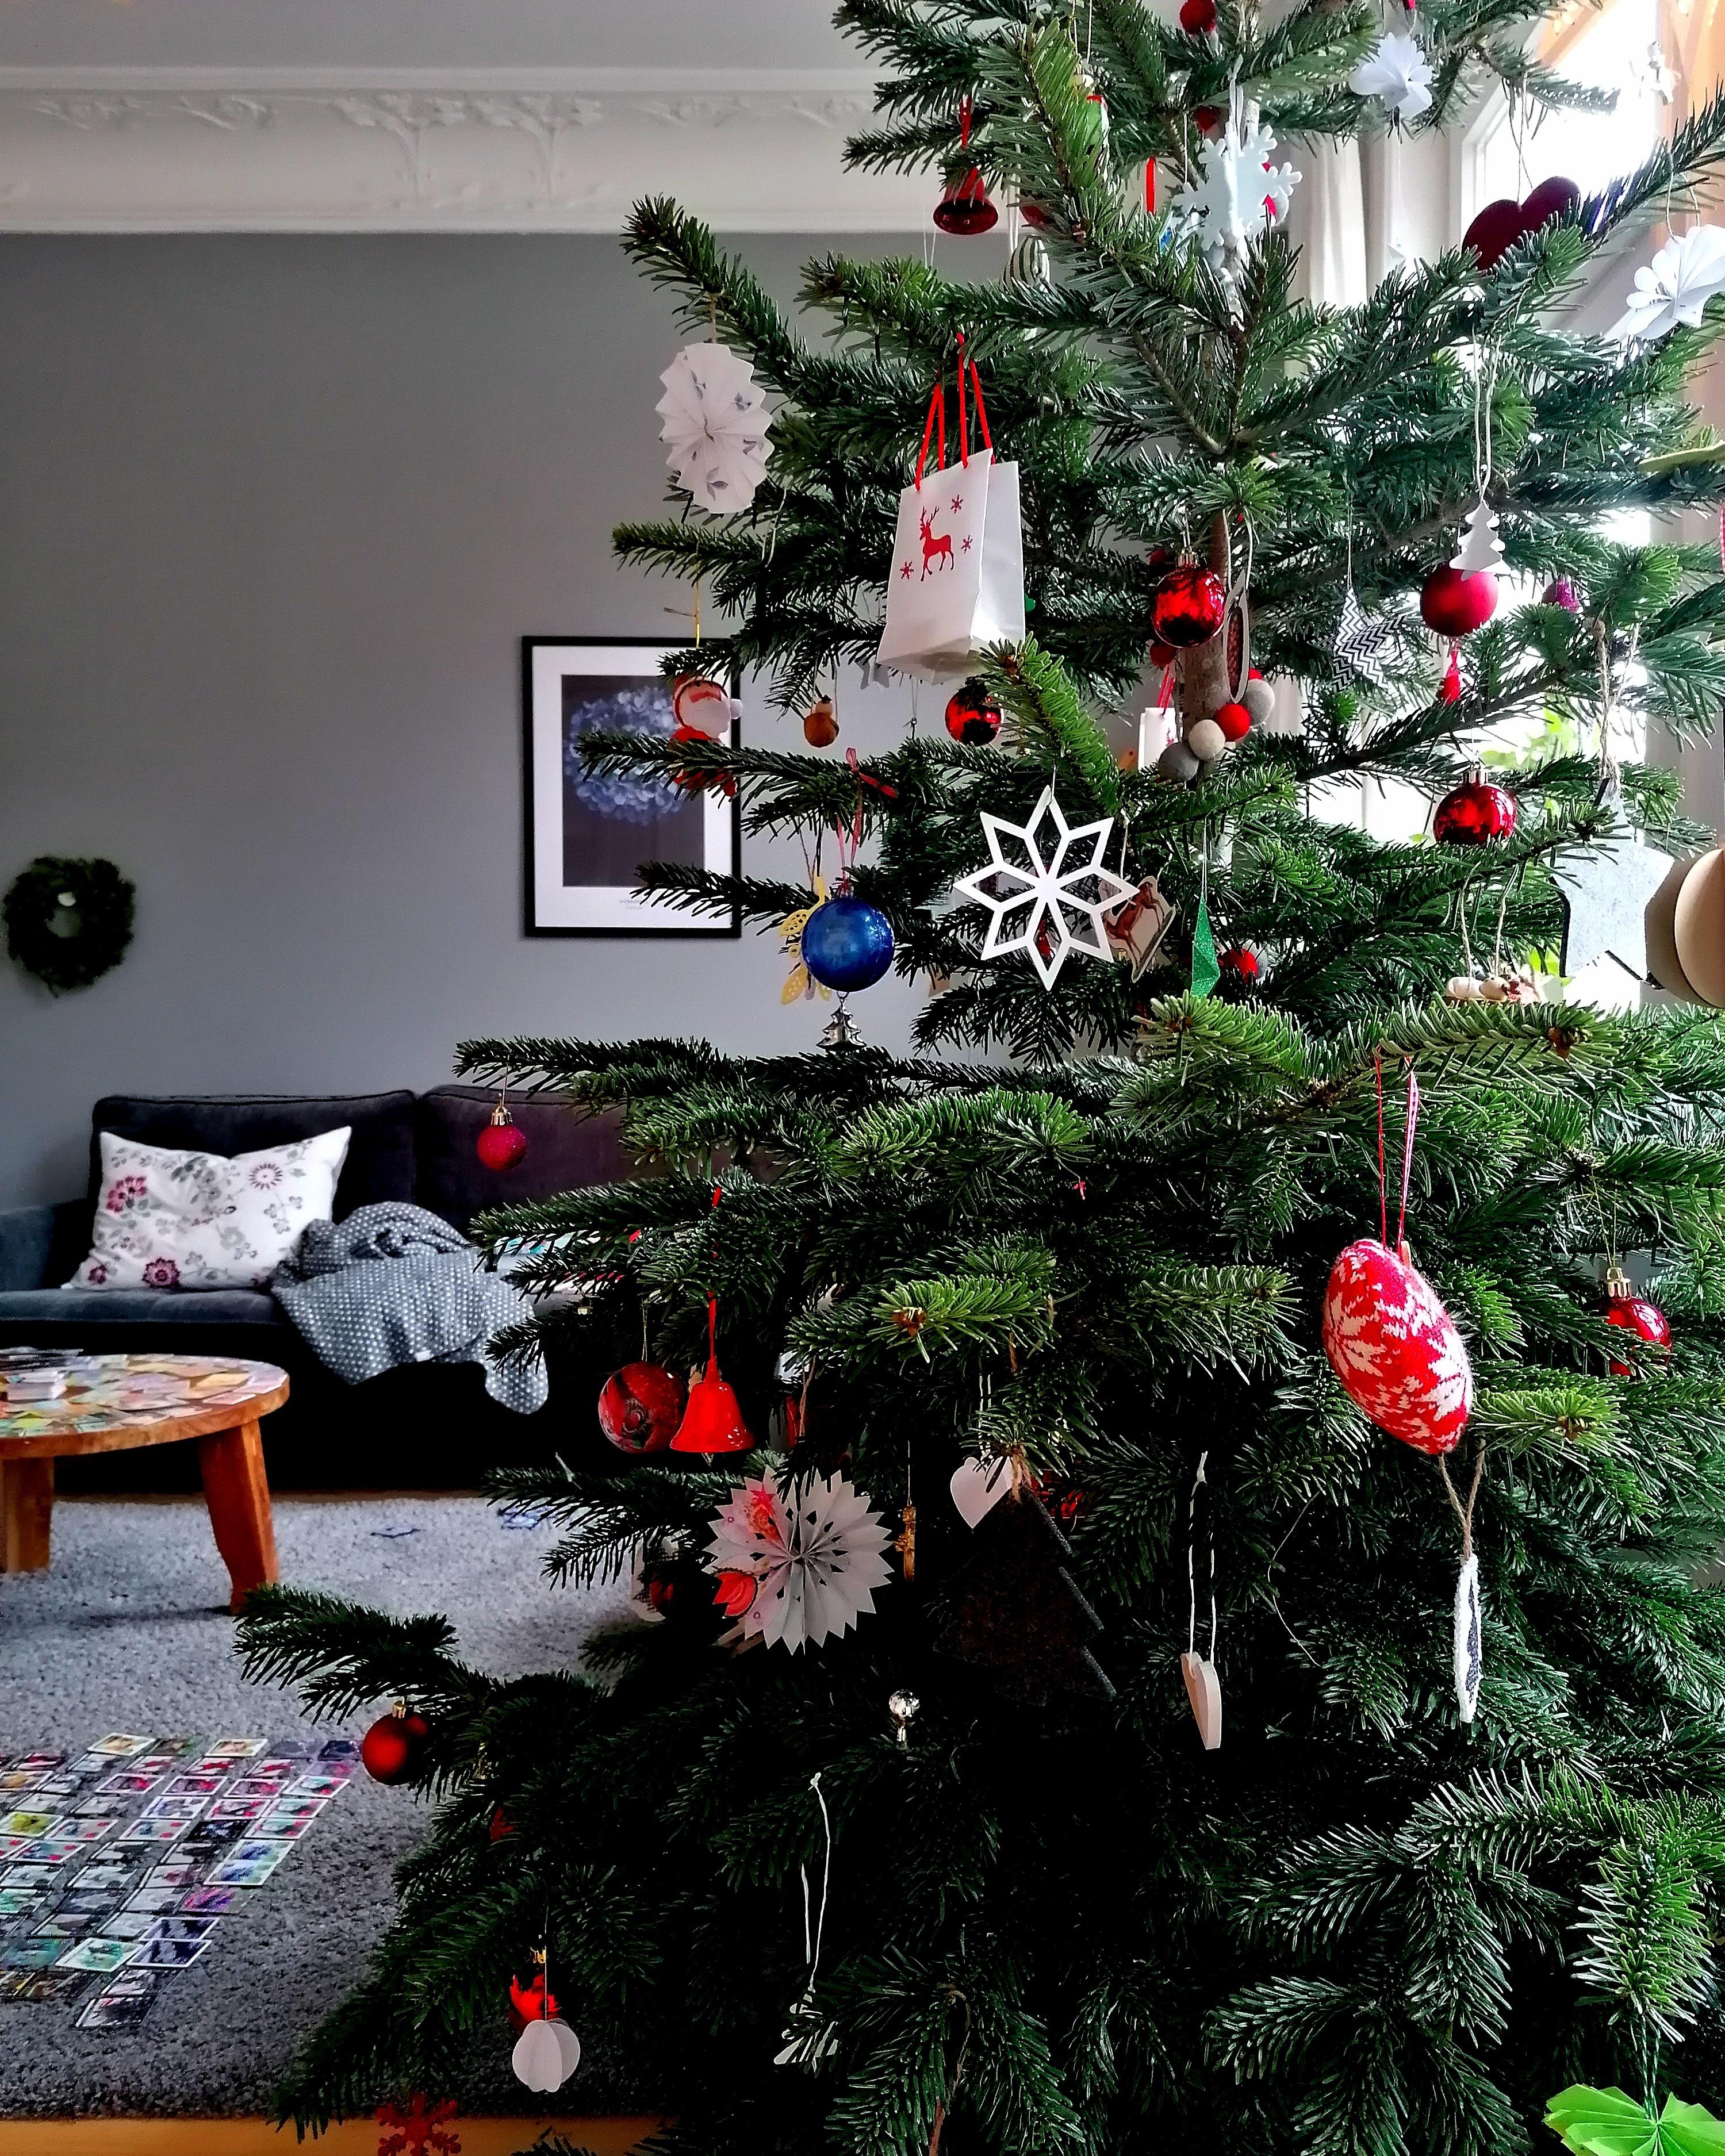 Monday before christmas!
#weihnachtsdeko #weihnachtsbaum #weihnachten #wohnzimmer #altbau #altbauliebe 